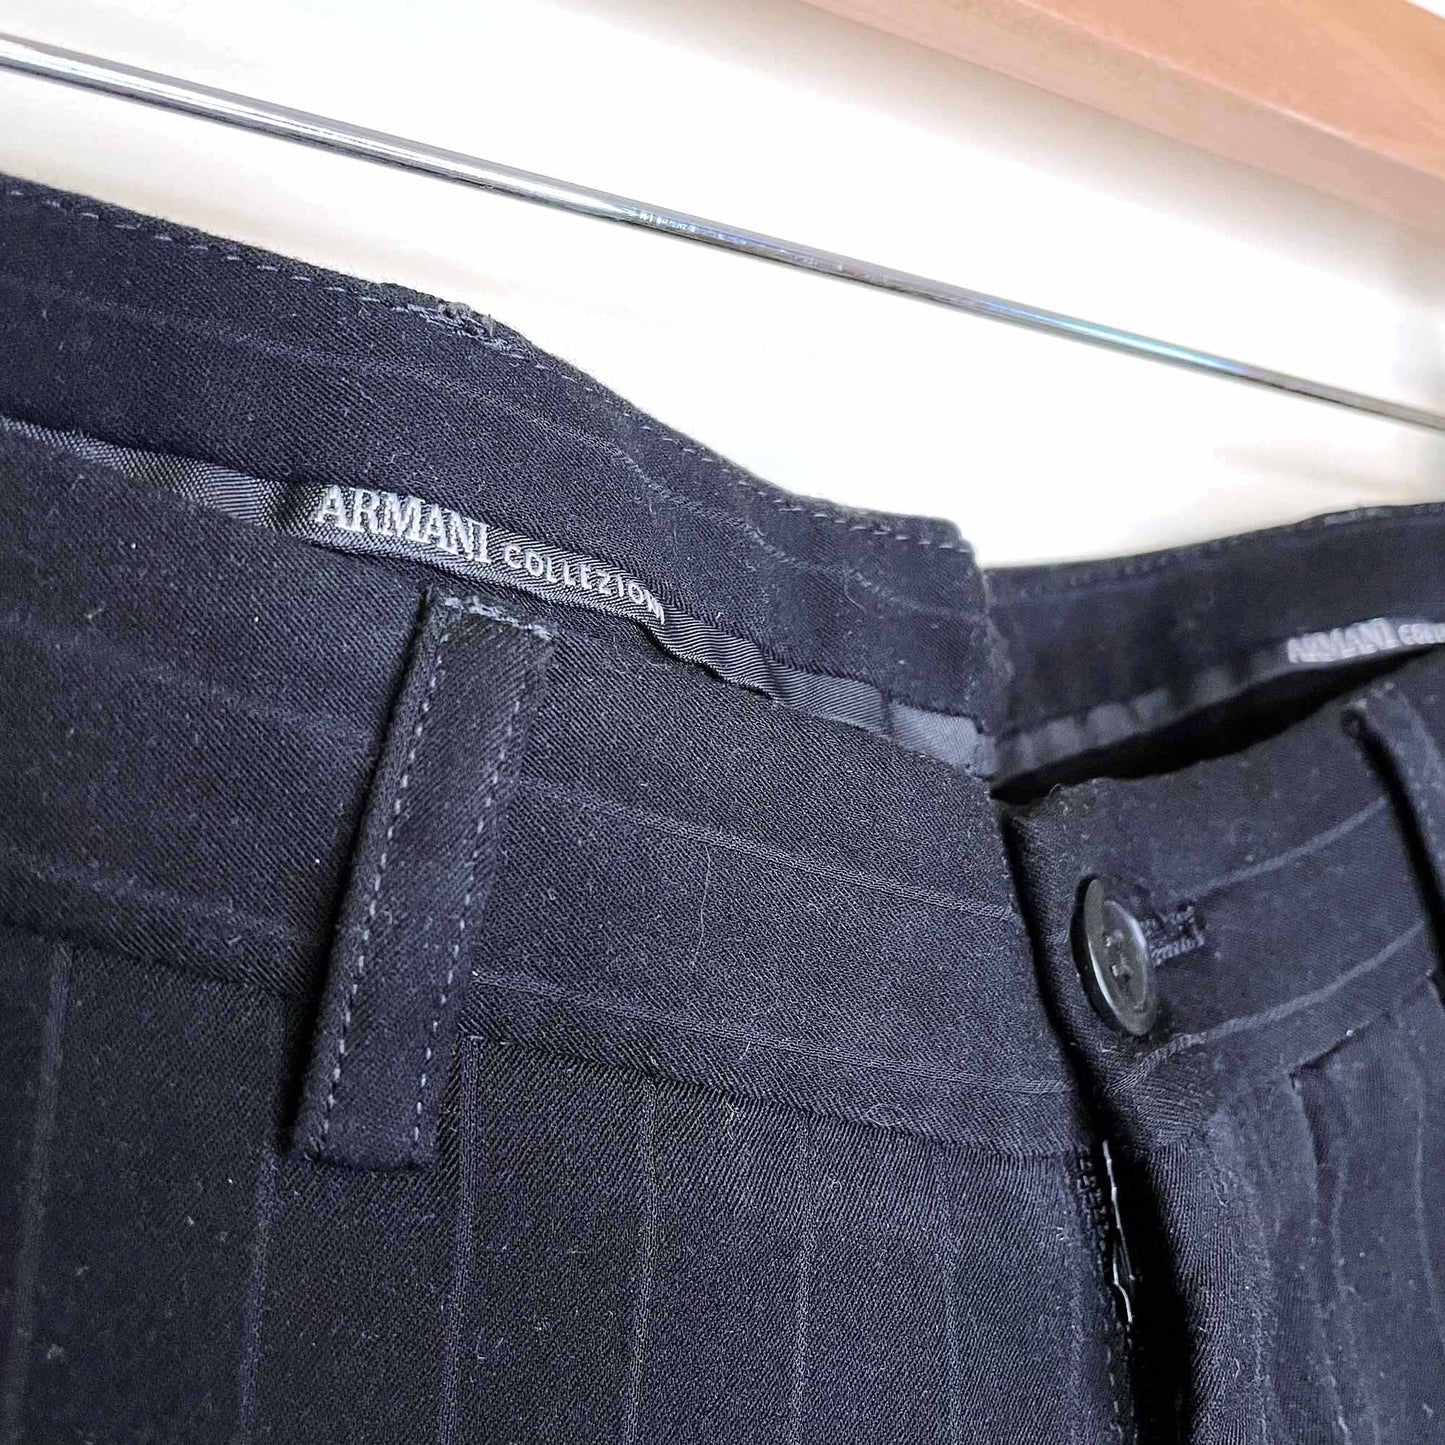 armani collezioni pinstripe tapered trouser - size 30